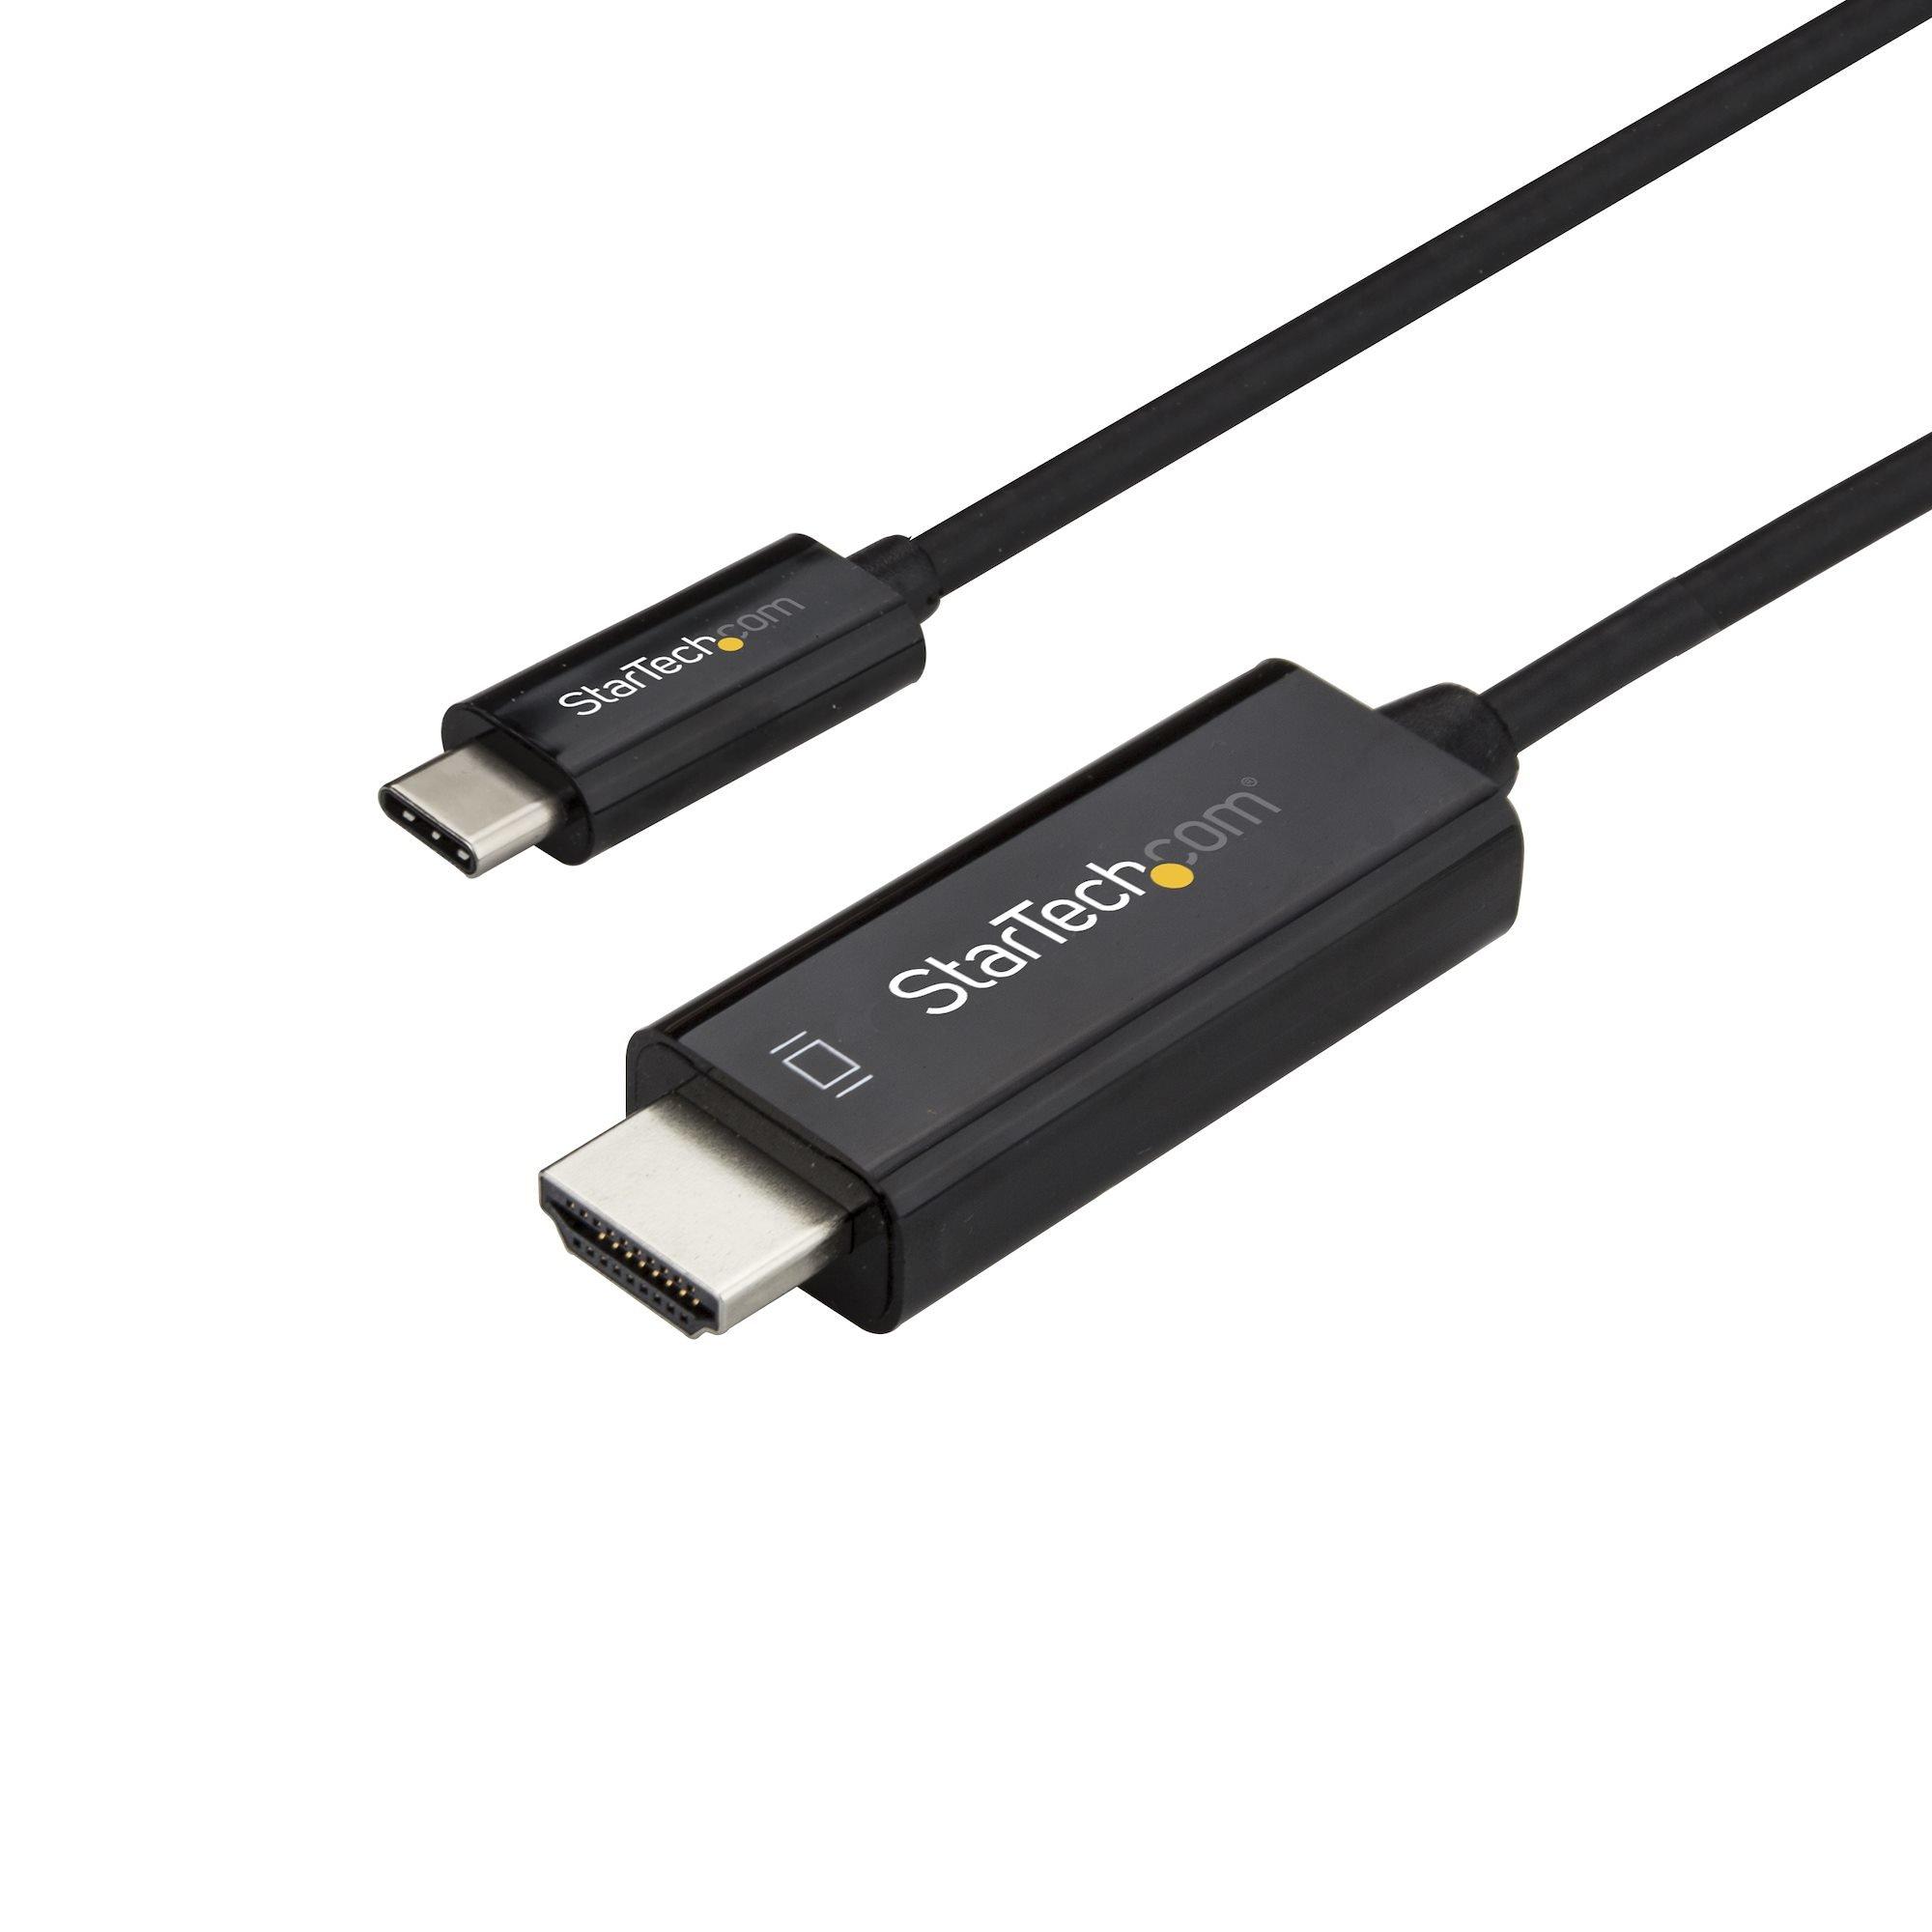 STARTECH.COM  StarTech.com Adaptateur USB-C vers HDMI 3m - Câble Vidéo USB Type C vers HDMI 2.0 - 4K60Hz - Compatible Thunderbolt 3 - Convertisseur USB-C à HDMI - DP 1.2 Alt Mode HBR2 - Noir 